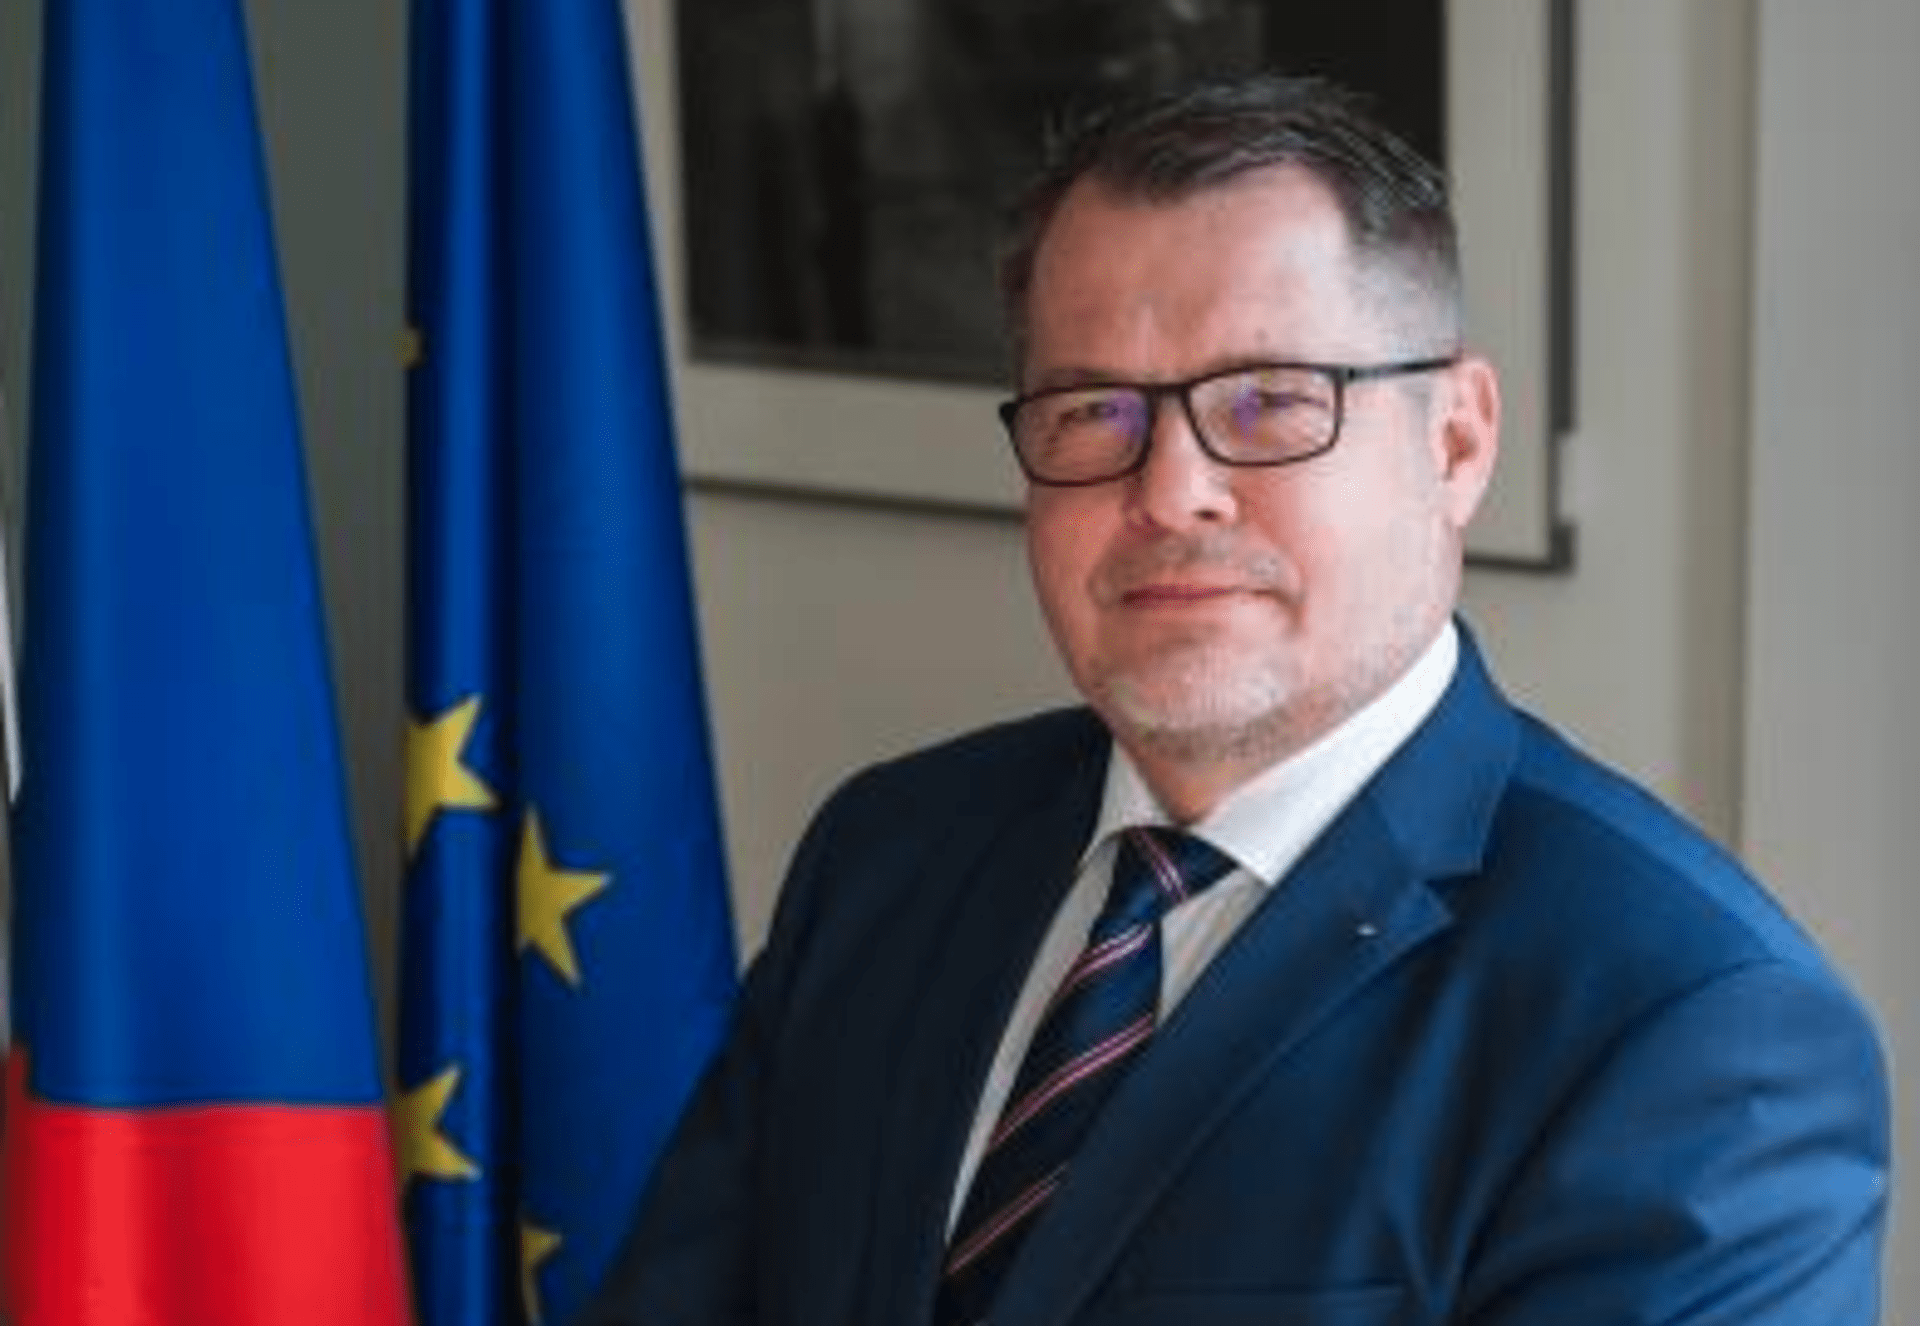 Český velvyslanec v Moskvě Vítězslav Pivoňka měl být předvolán na ruské ministerstvo zahraničí kvůli kauze Vrbětice.